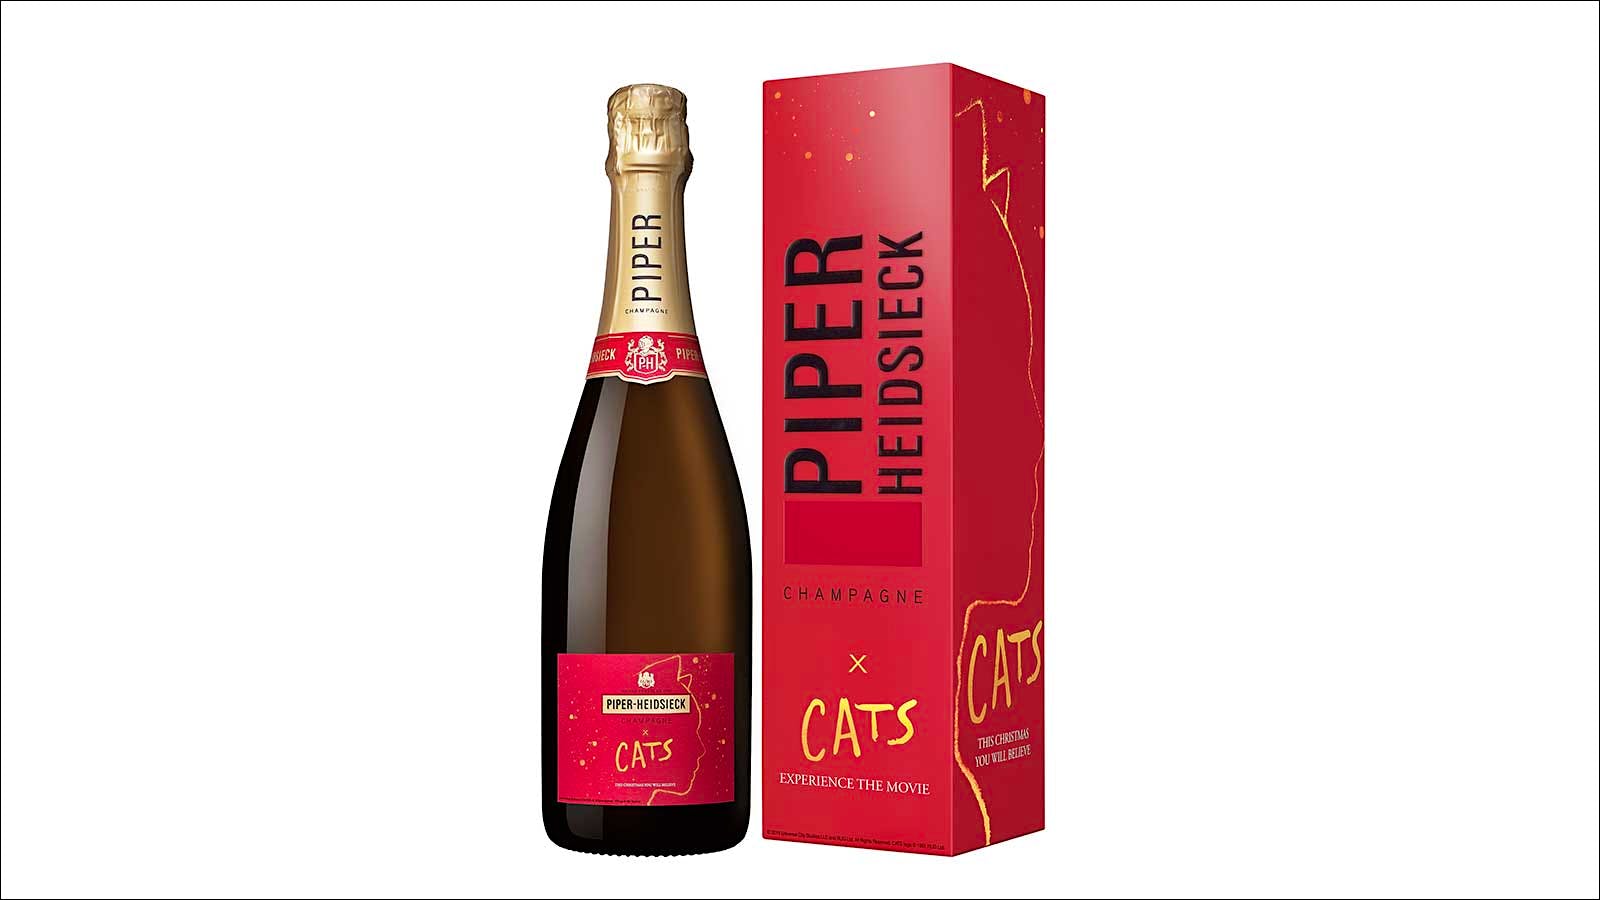 Piper-Heidsieck Cats label